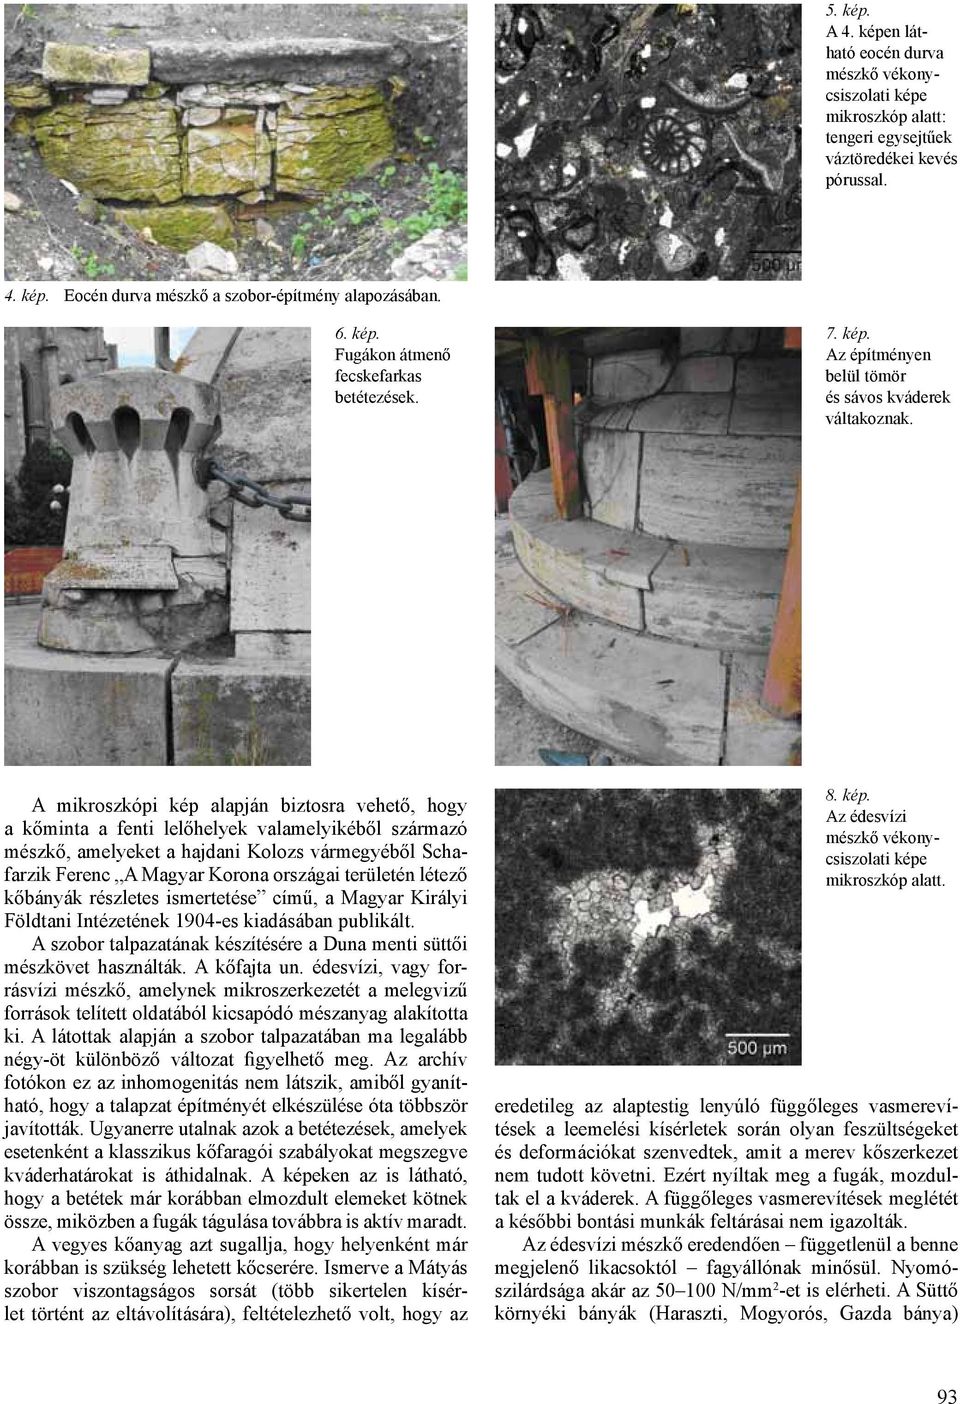 A mikroszkópi kép alapján biztosra vehető, hogy a kőminta a fenti lelőhelyek valamelyikéből származó mészkő, amelyeket a hajdani Kolozs vármegyéből Schafarzik Ferenc A Magyar Korona országai